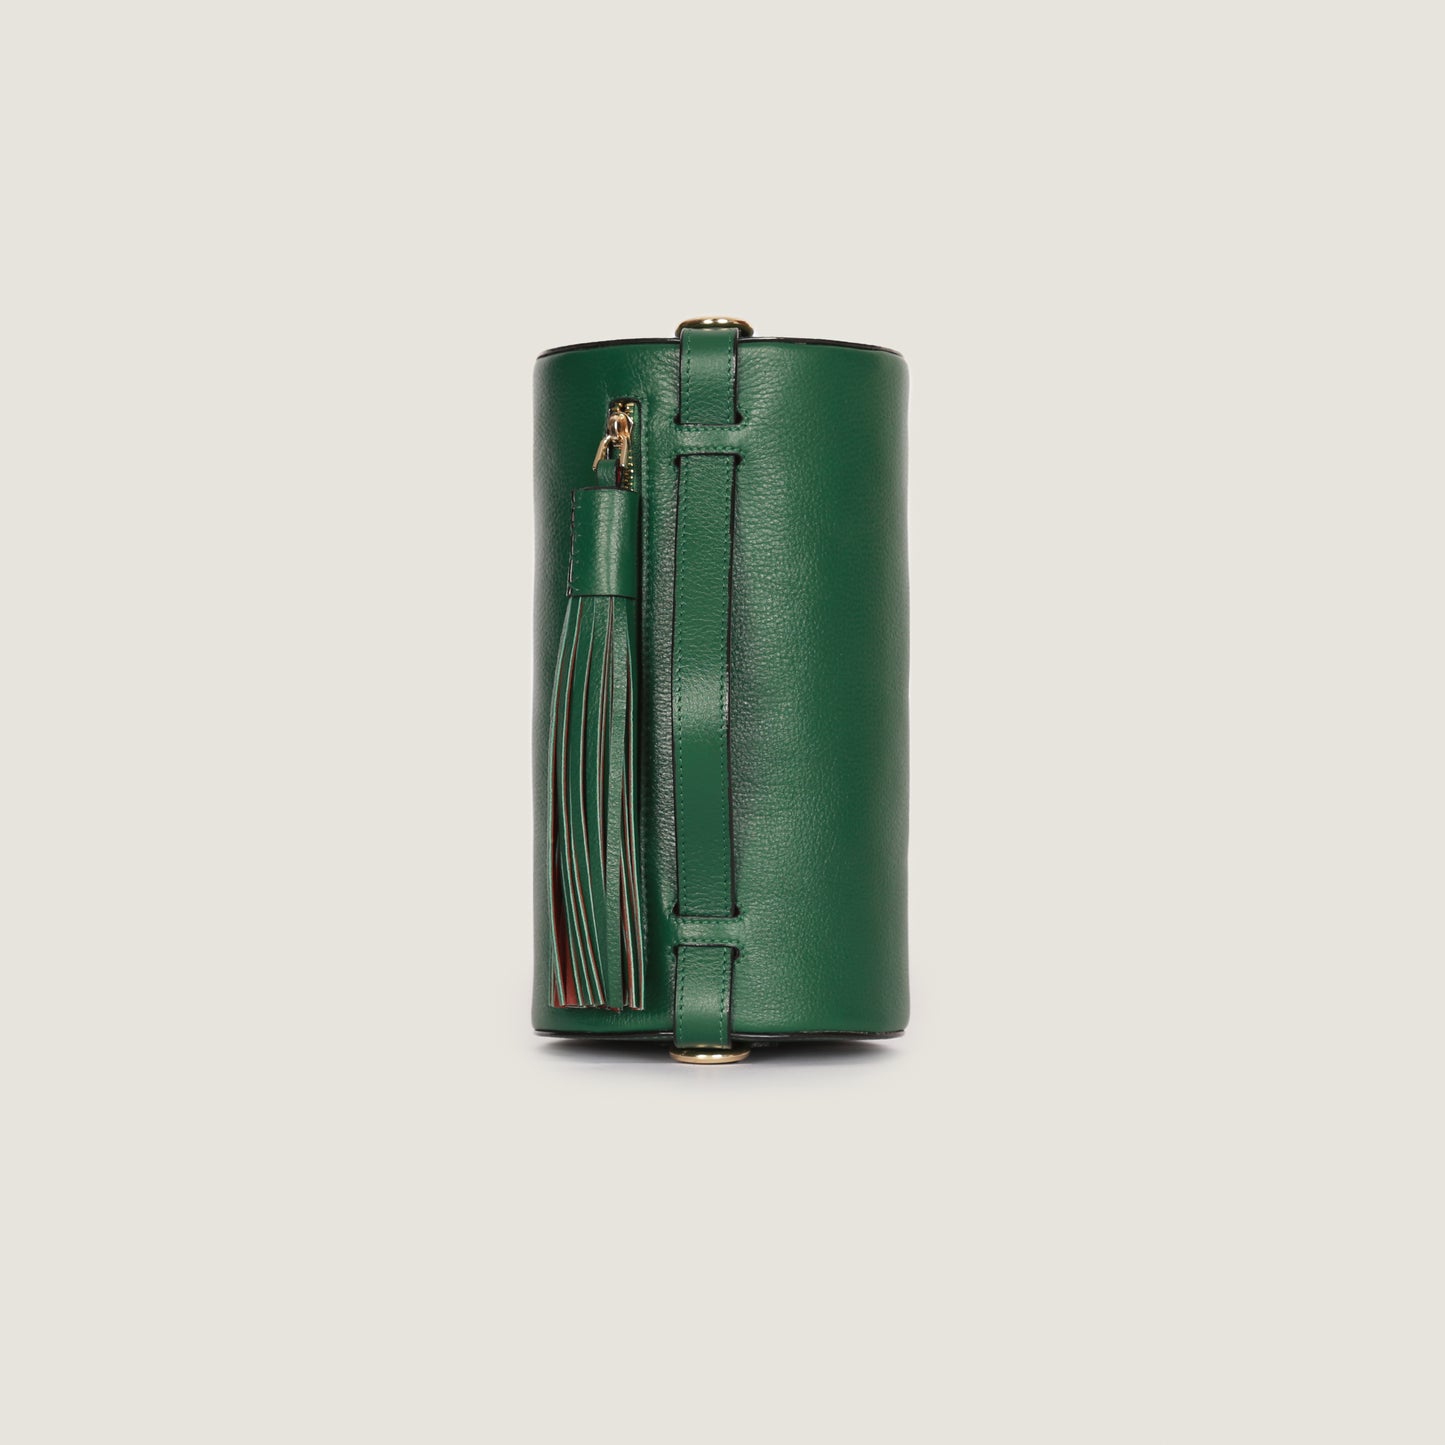 The Green Barrel Bag